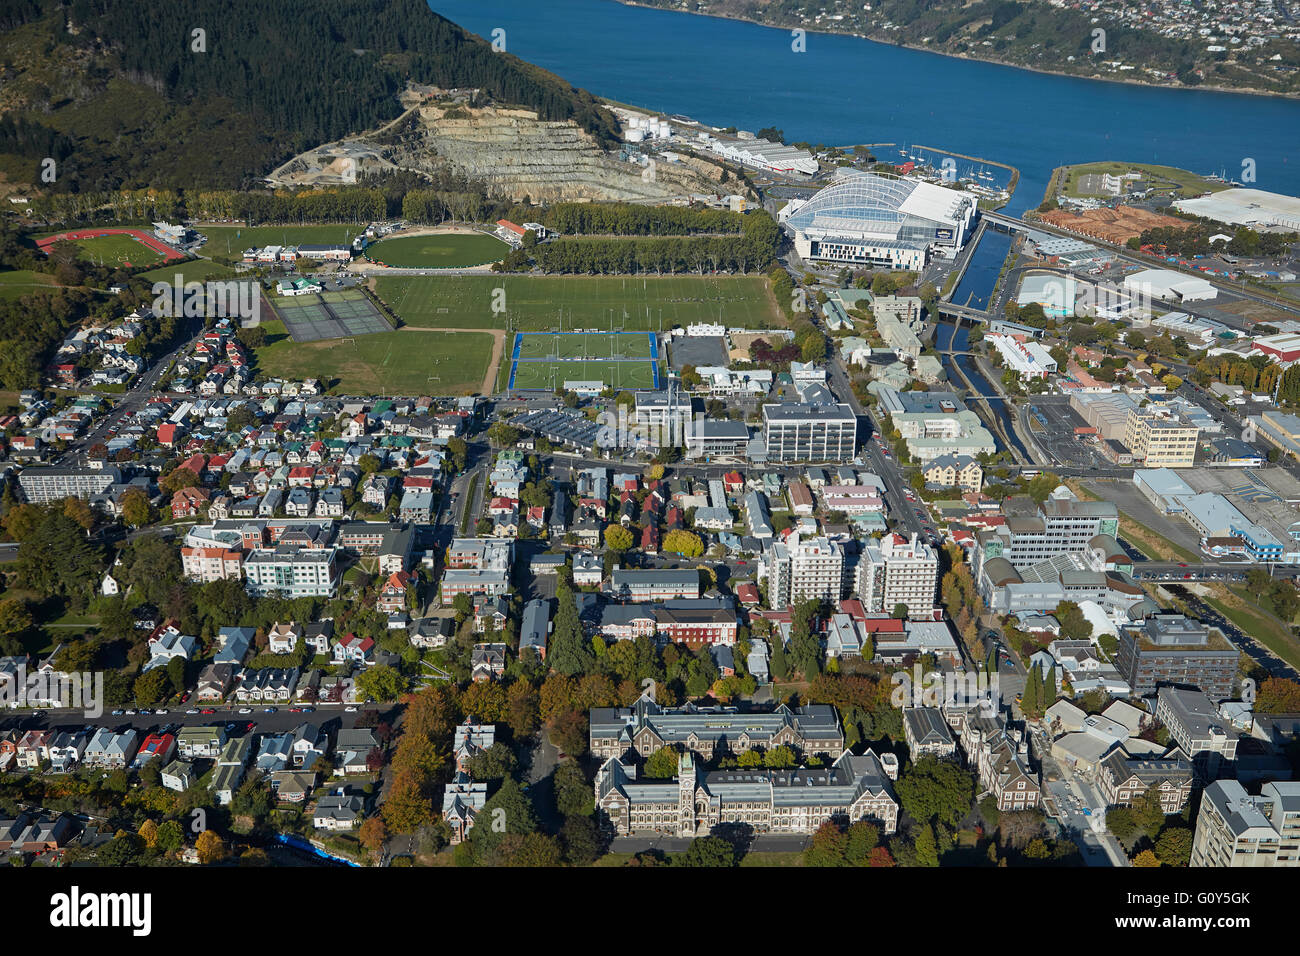 Universität von Otago, Logan Park, Forsyth Barr Stadium und Otago Harbour, Dunedin, Otago, Südinsel, Neuseeland - Antenne Stockfoto